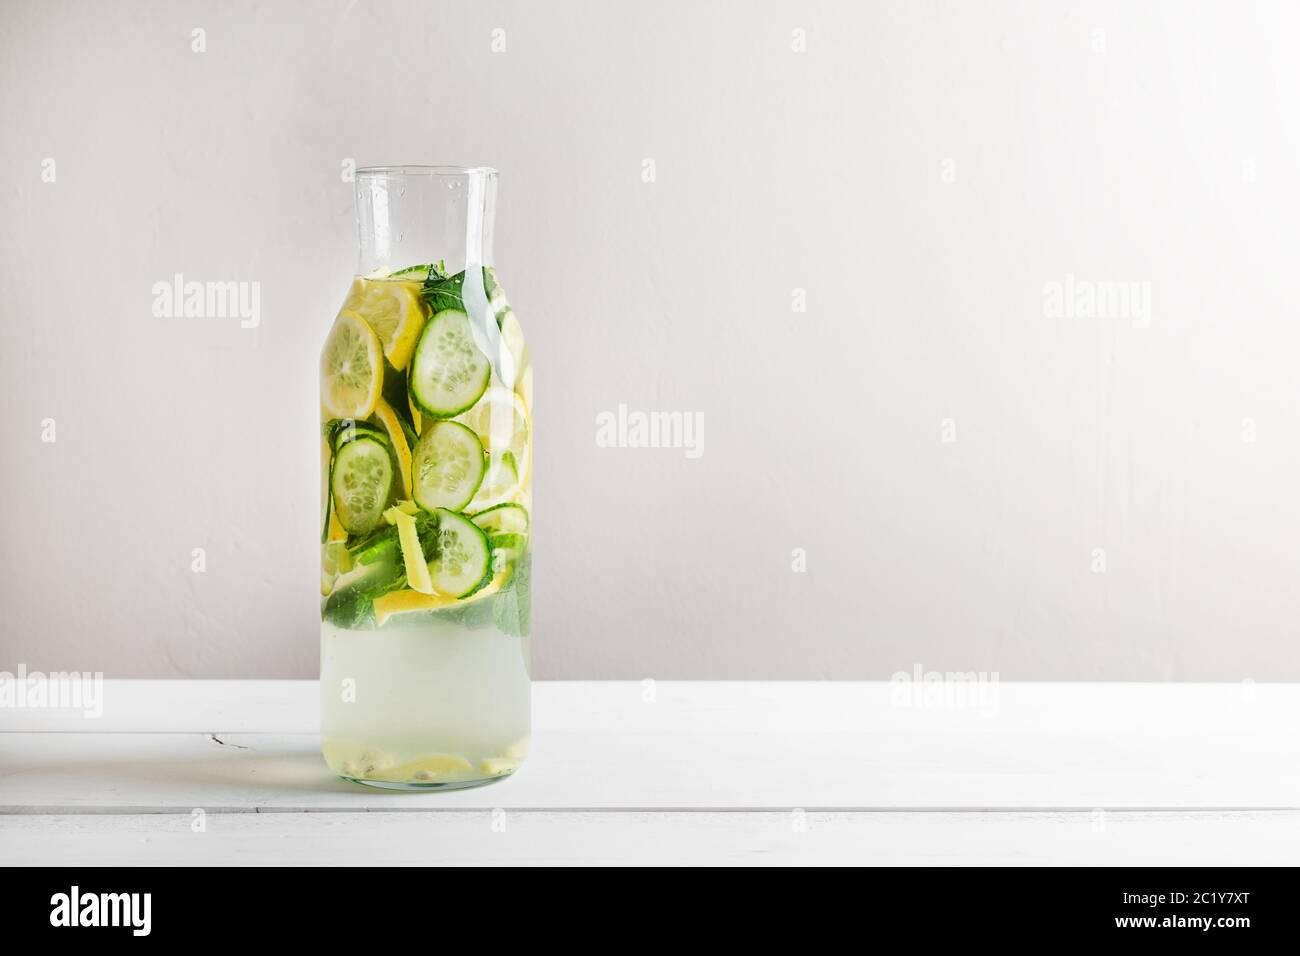 Sassy diet water. Cucumber, lemon, mint lemonade in glasses on white wooden table. Stock Photo